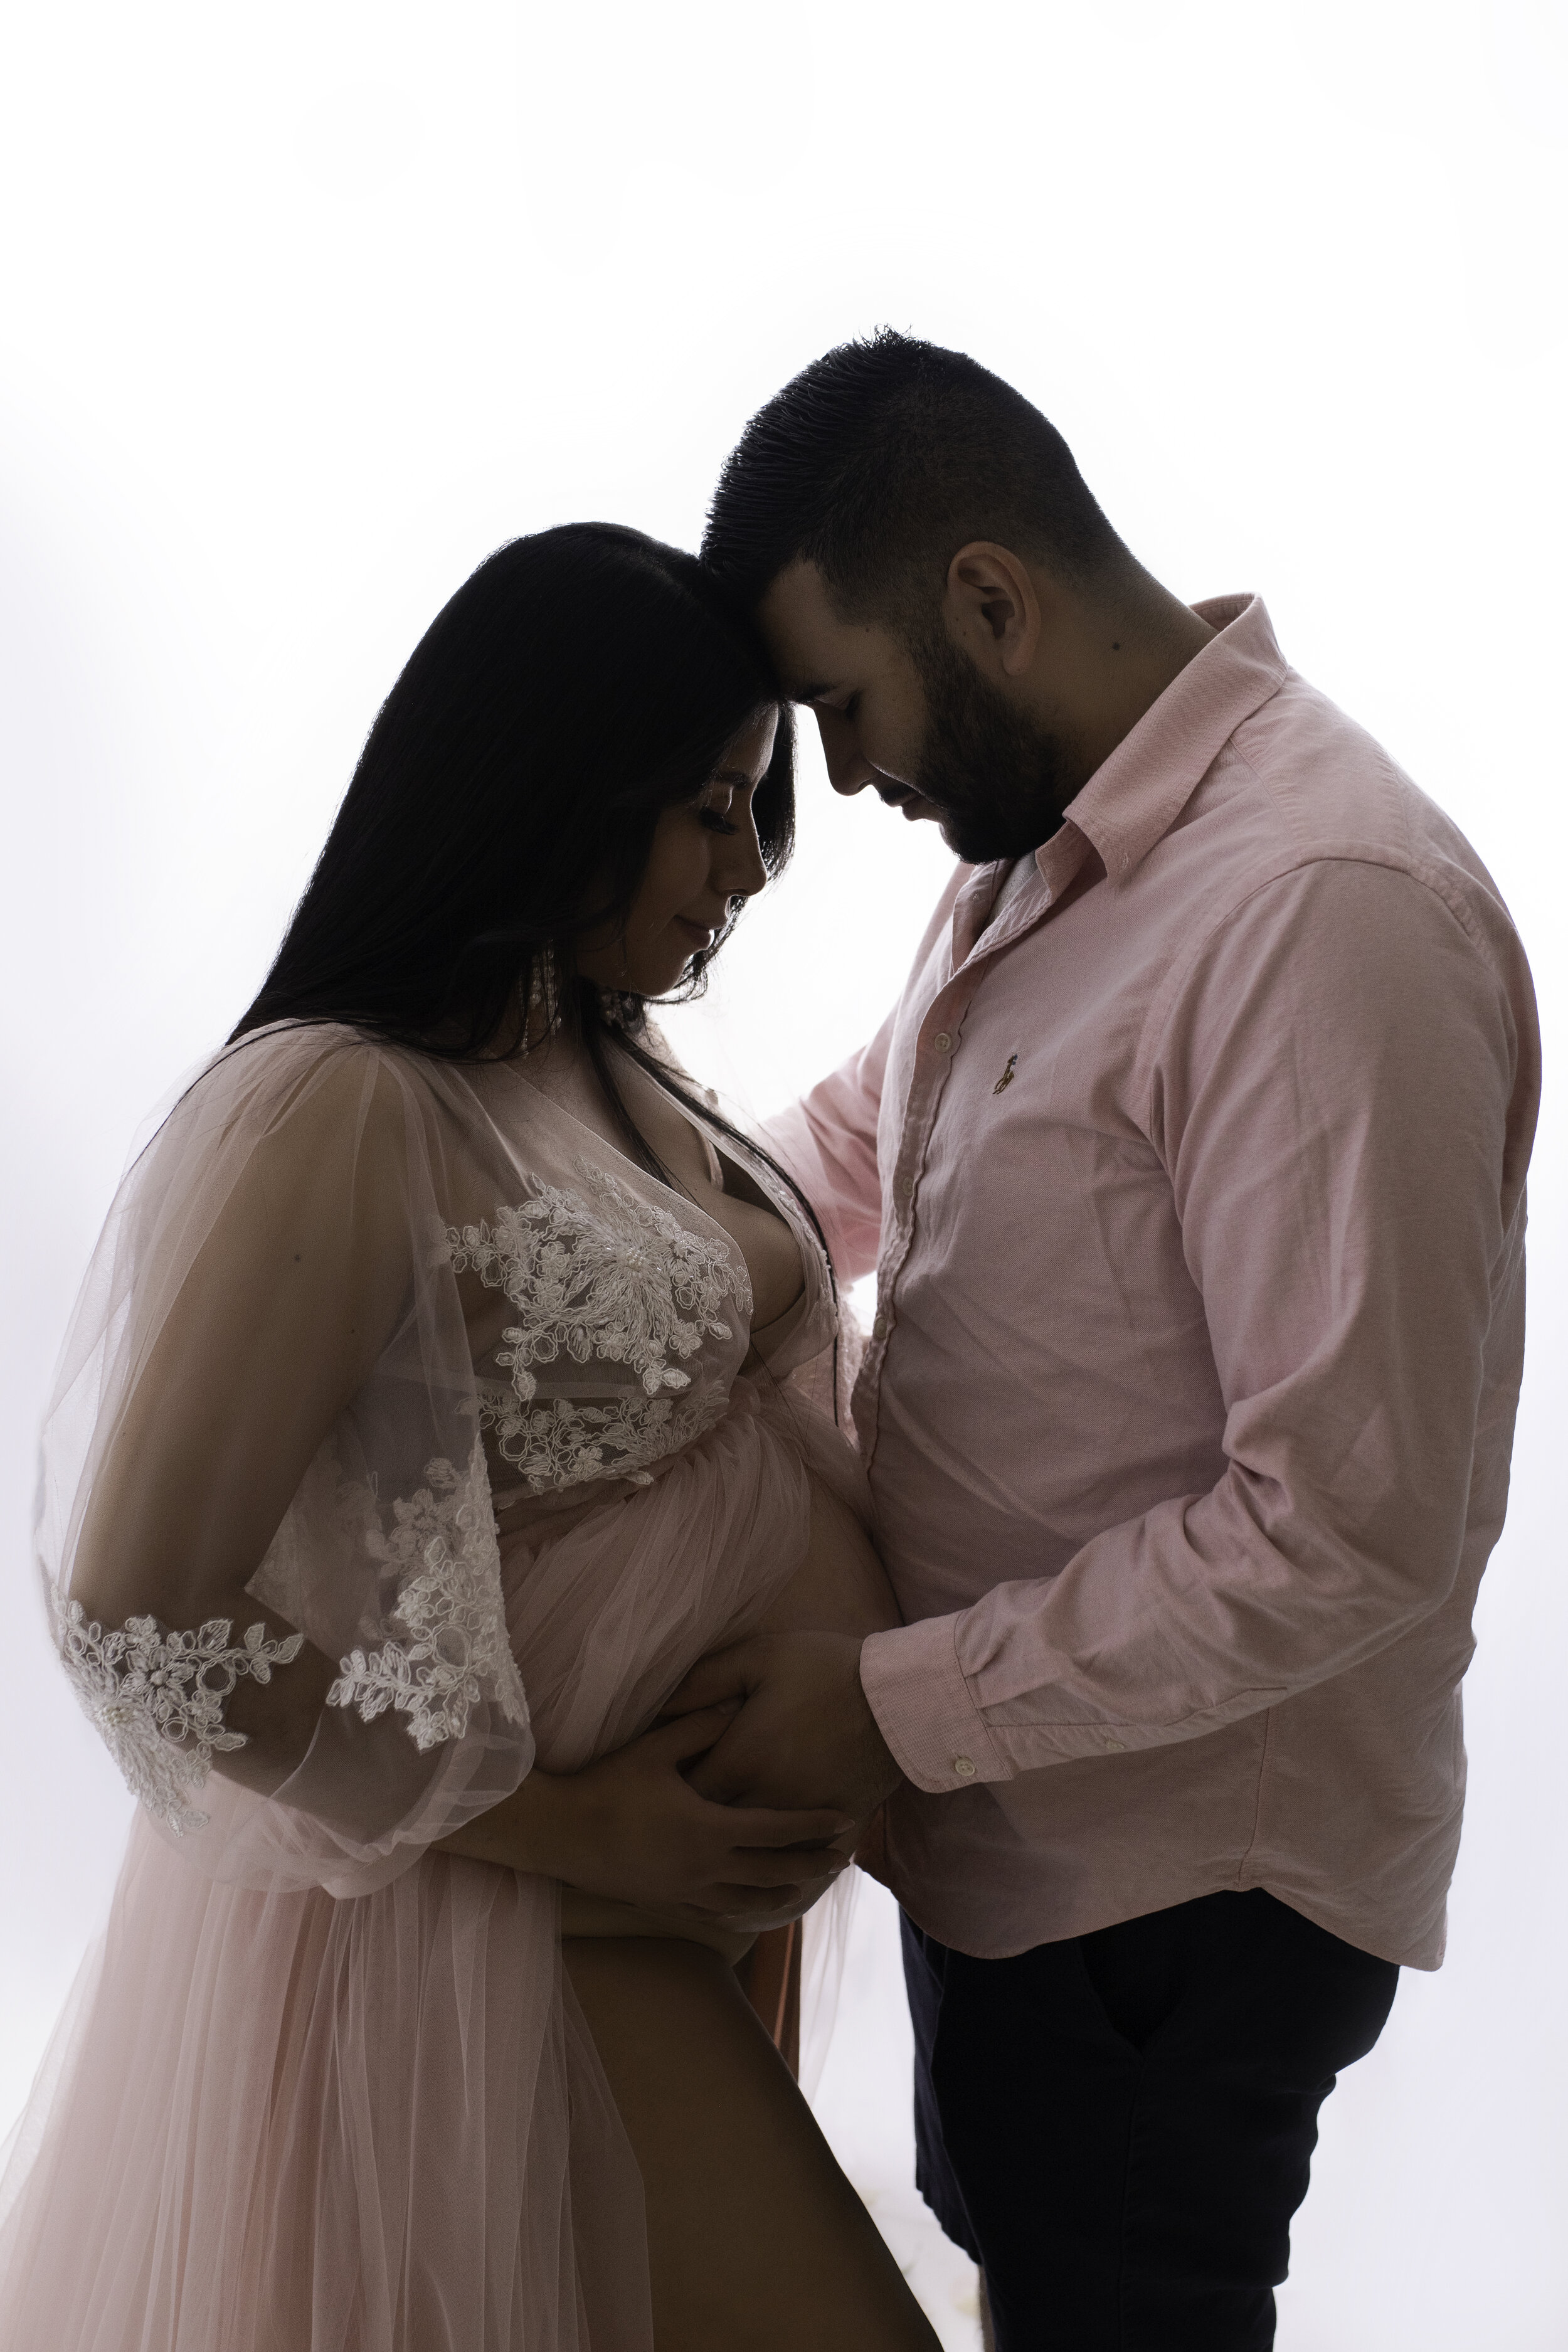 Quad Cities Maternity Photographer Couples Parents